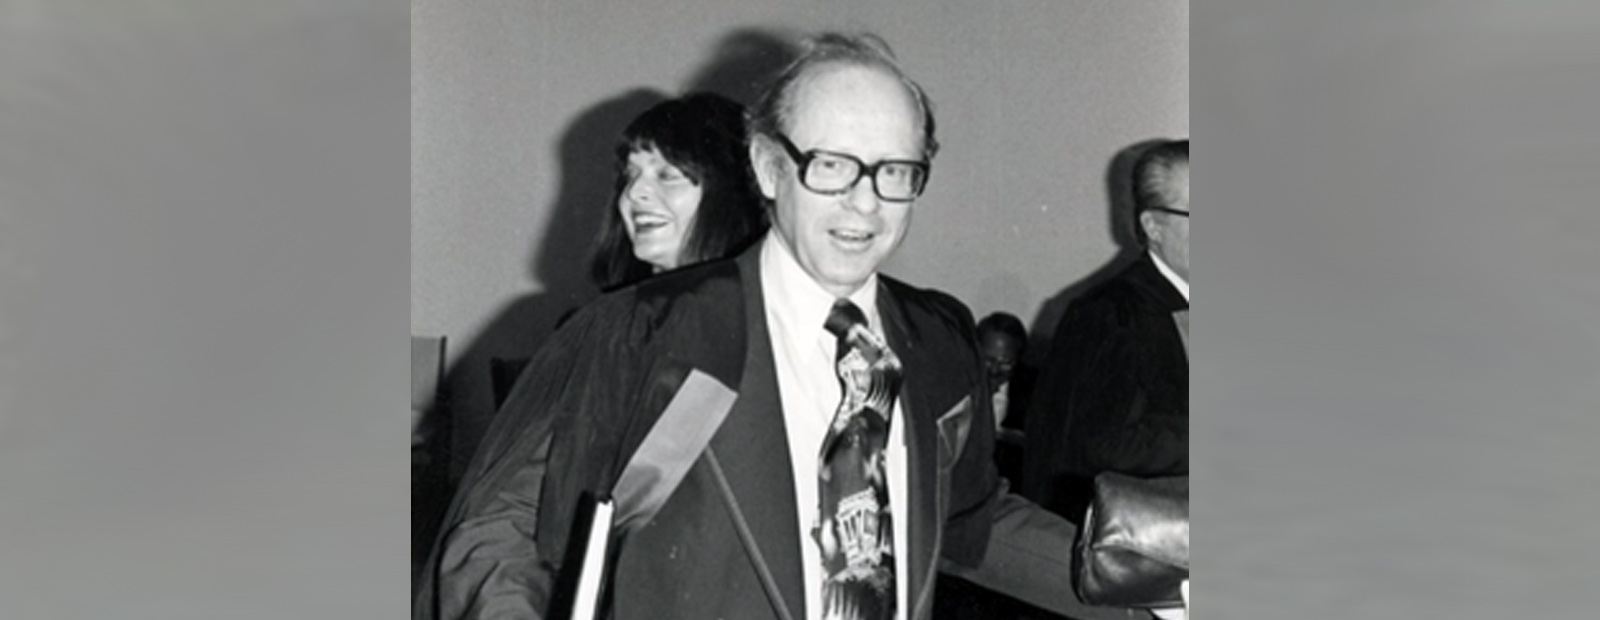 Black and white photo of Dr. Paul G. Otke